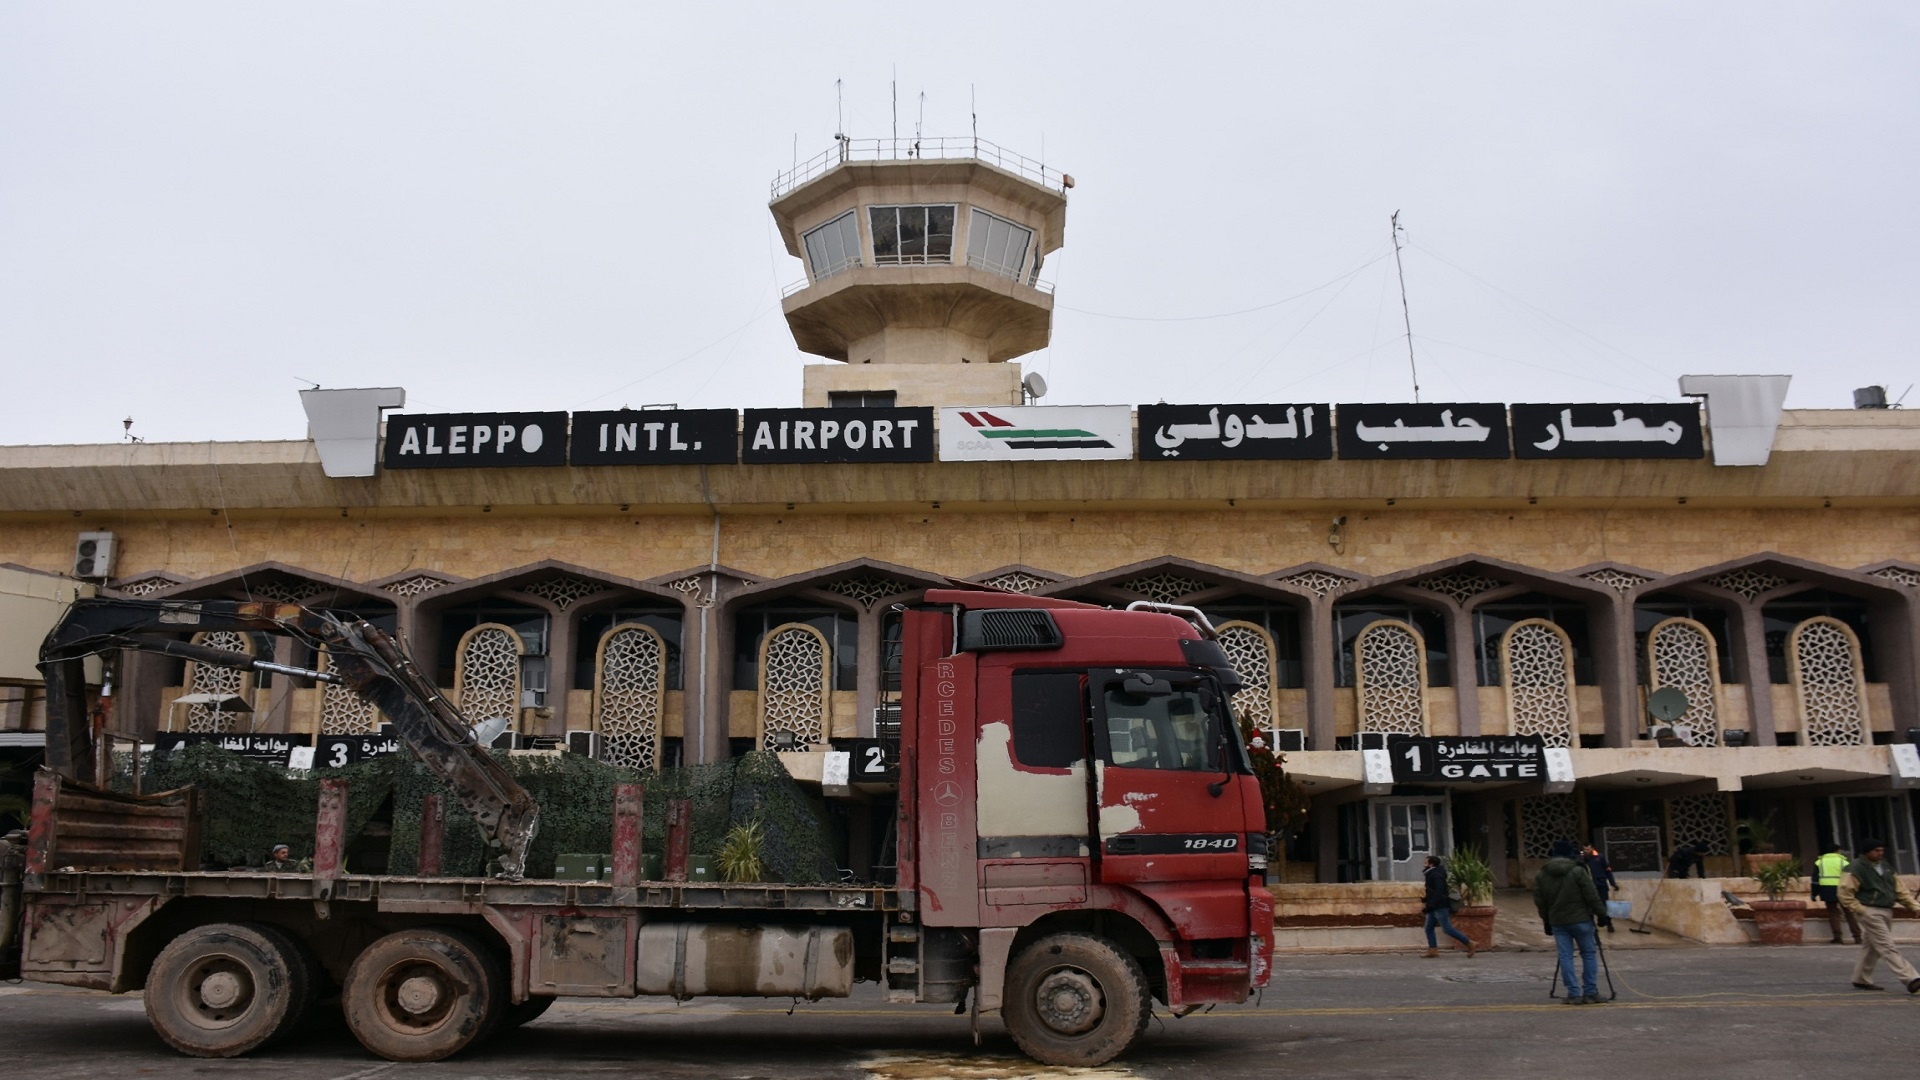 كشفت الخطوط الجوية التابعة لنظام الأسد في بيانٍ لها عن موعد استئناف الرحلات الجوية ل(مطار حلب) مع دولة عربية بعد توقف الرحلات لمدة 8 سنوات